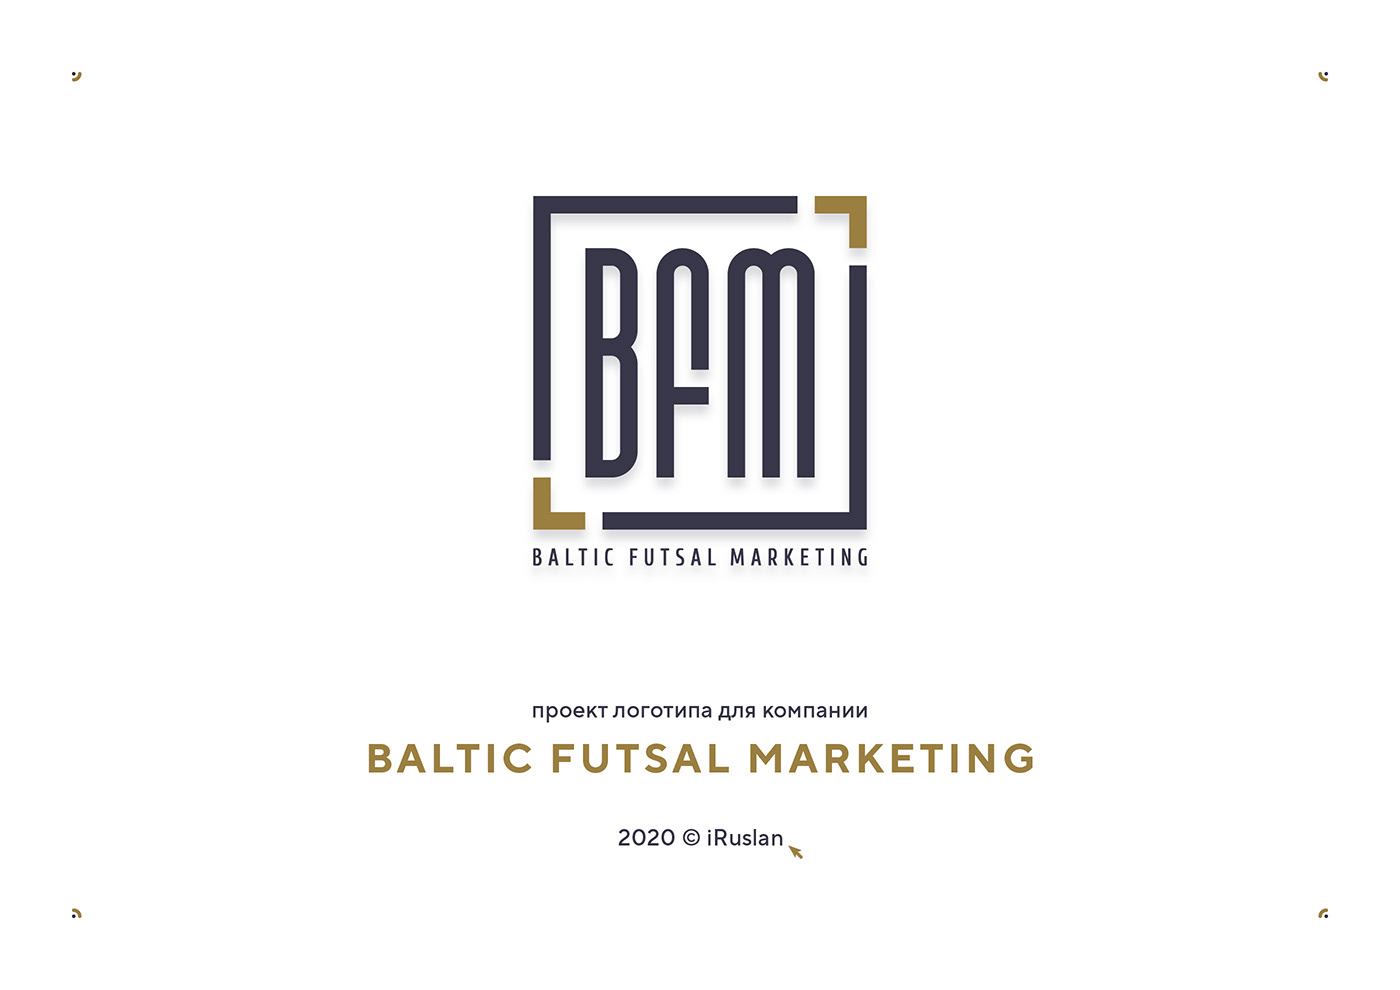 Baltic Futsal marketing